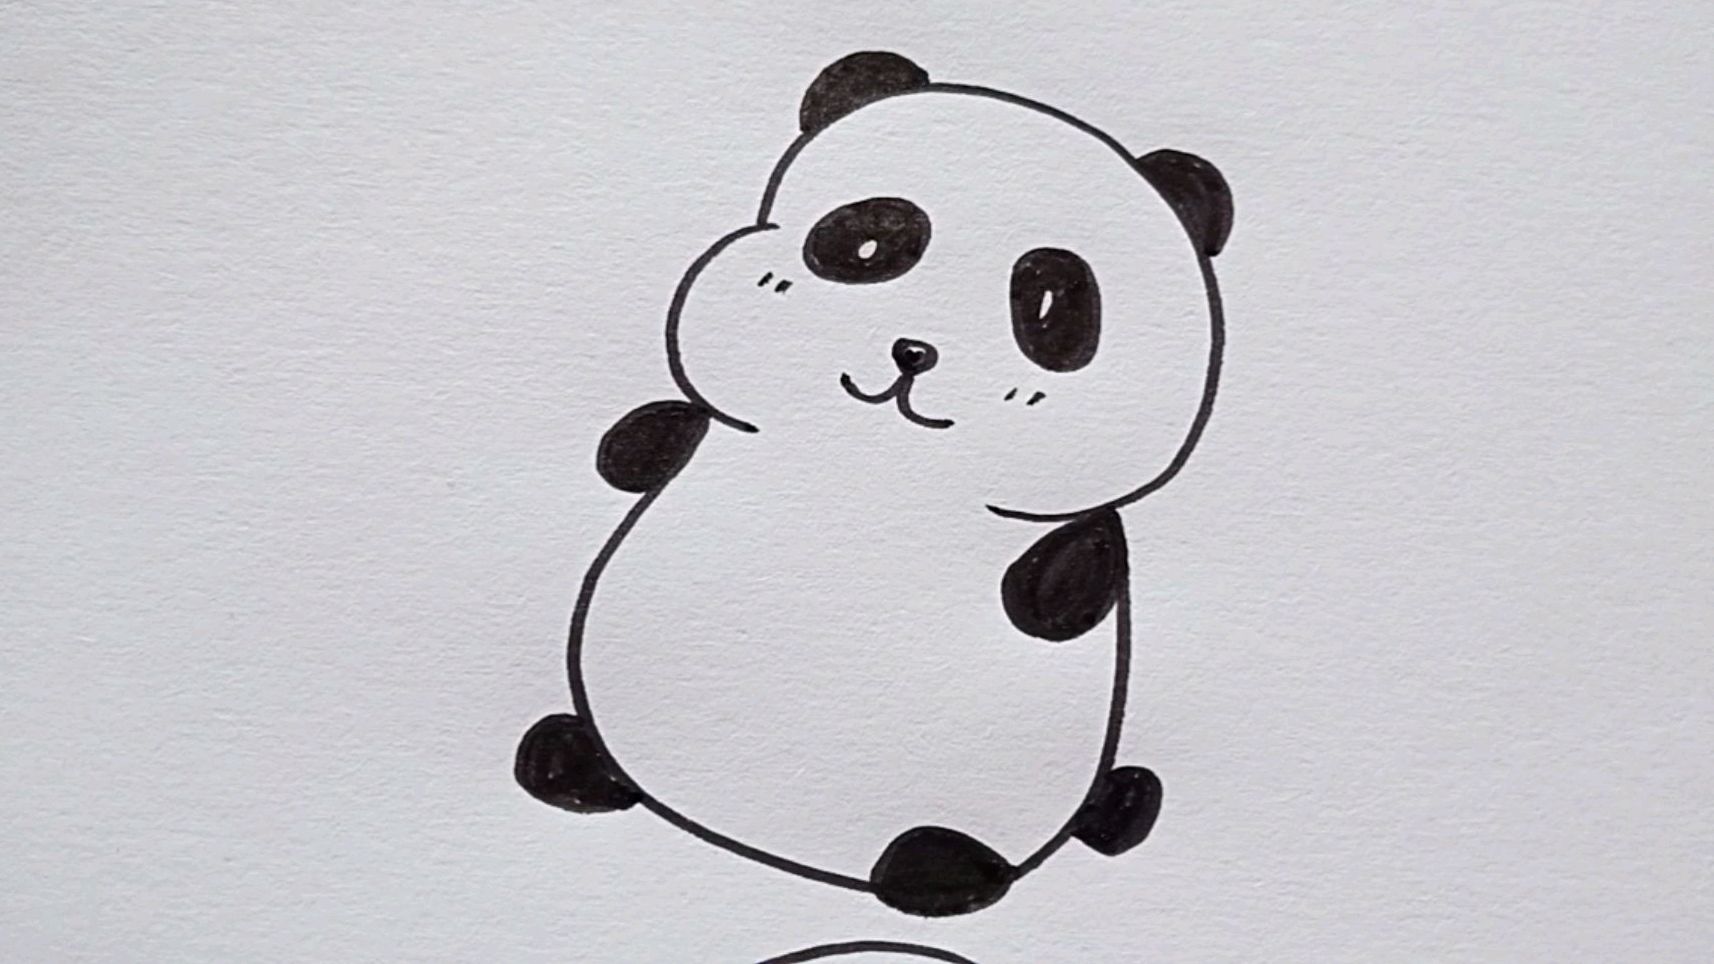 萌萌的小熊猫,和我一起画吧